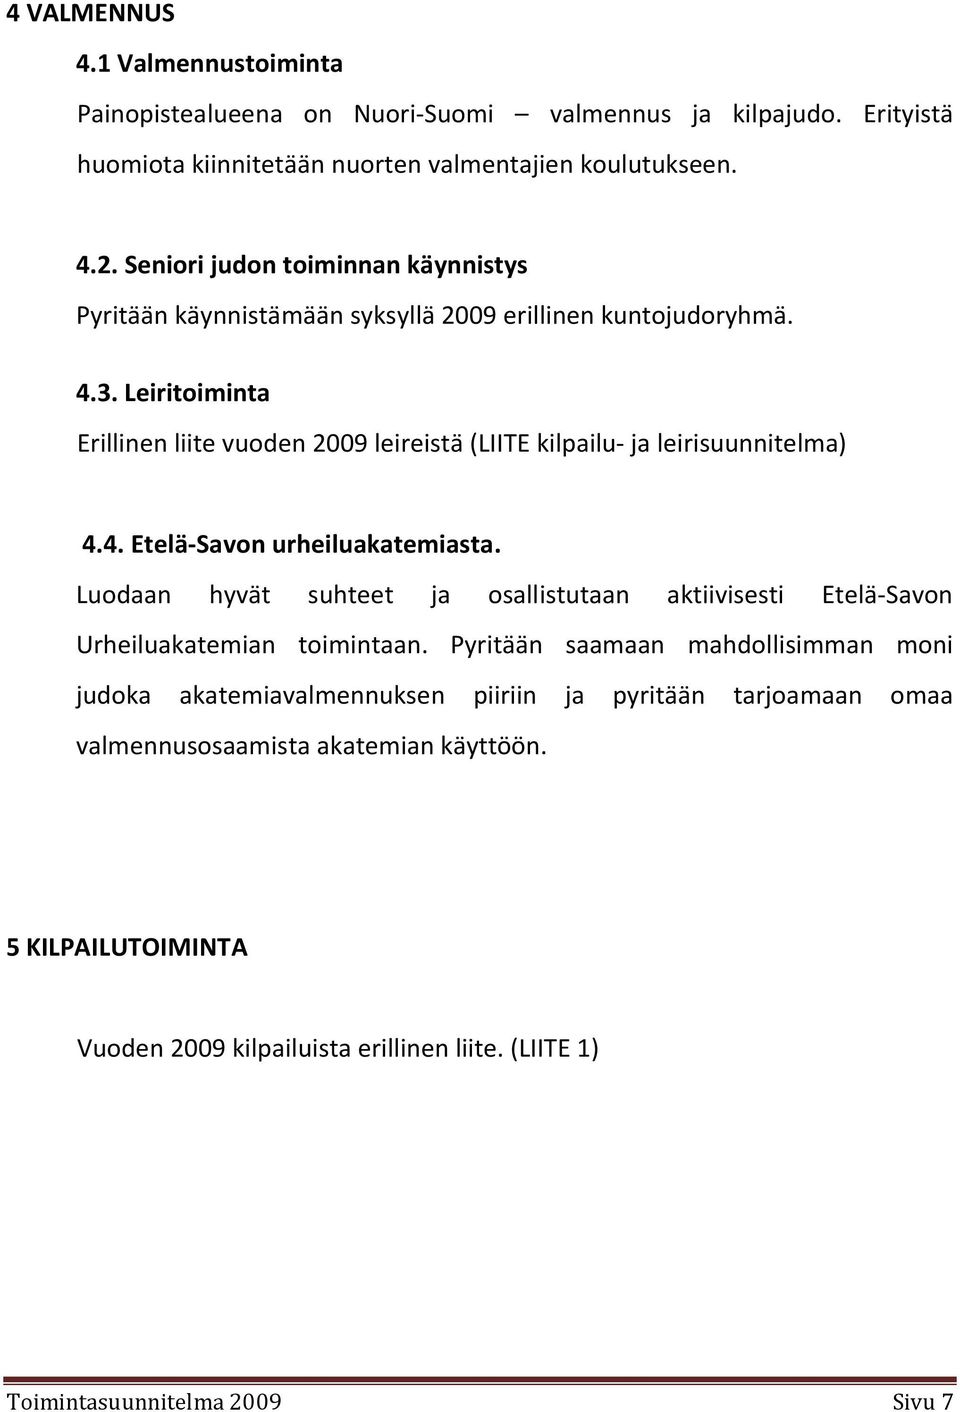 Leiritoiminta Erillinen liite vuoden 2009 leireistä (LIITE kilpailu- ja leirisuunnitelma) 4.4. Etelä-Savon urheiluakatemiasta.